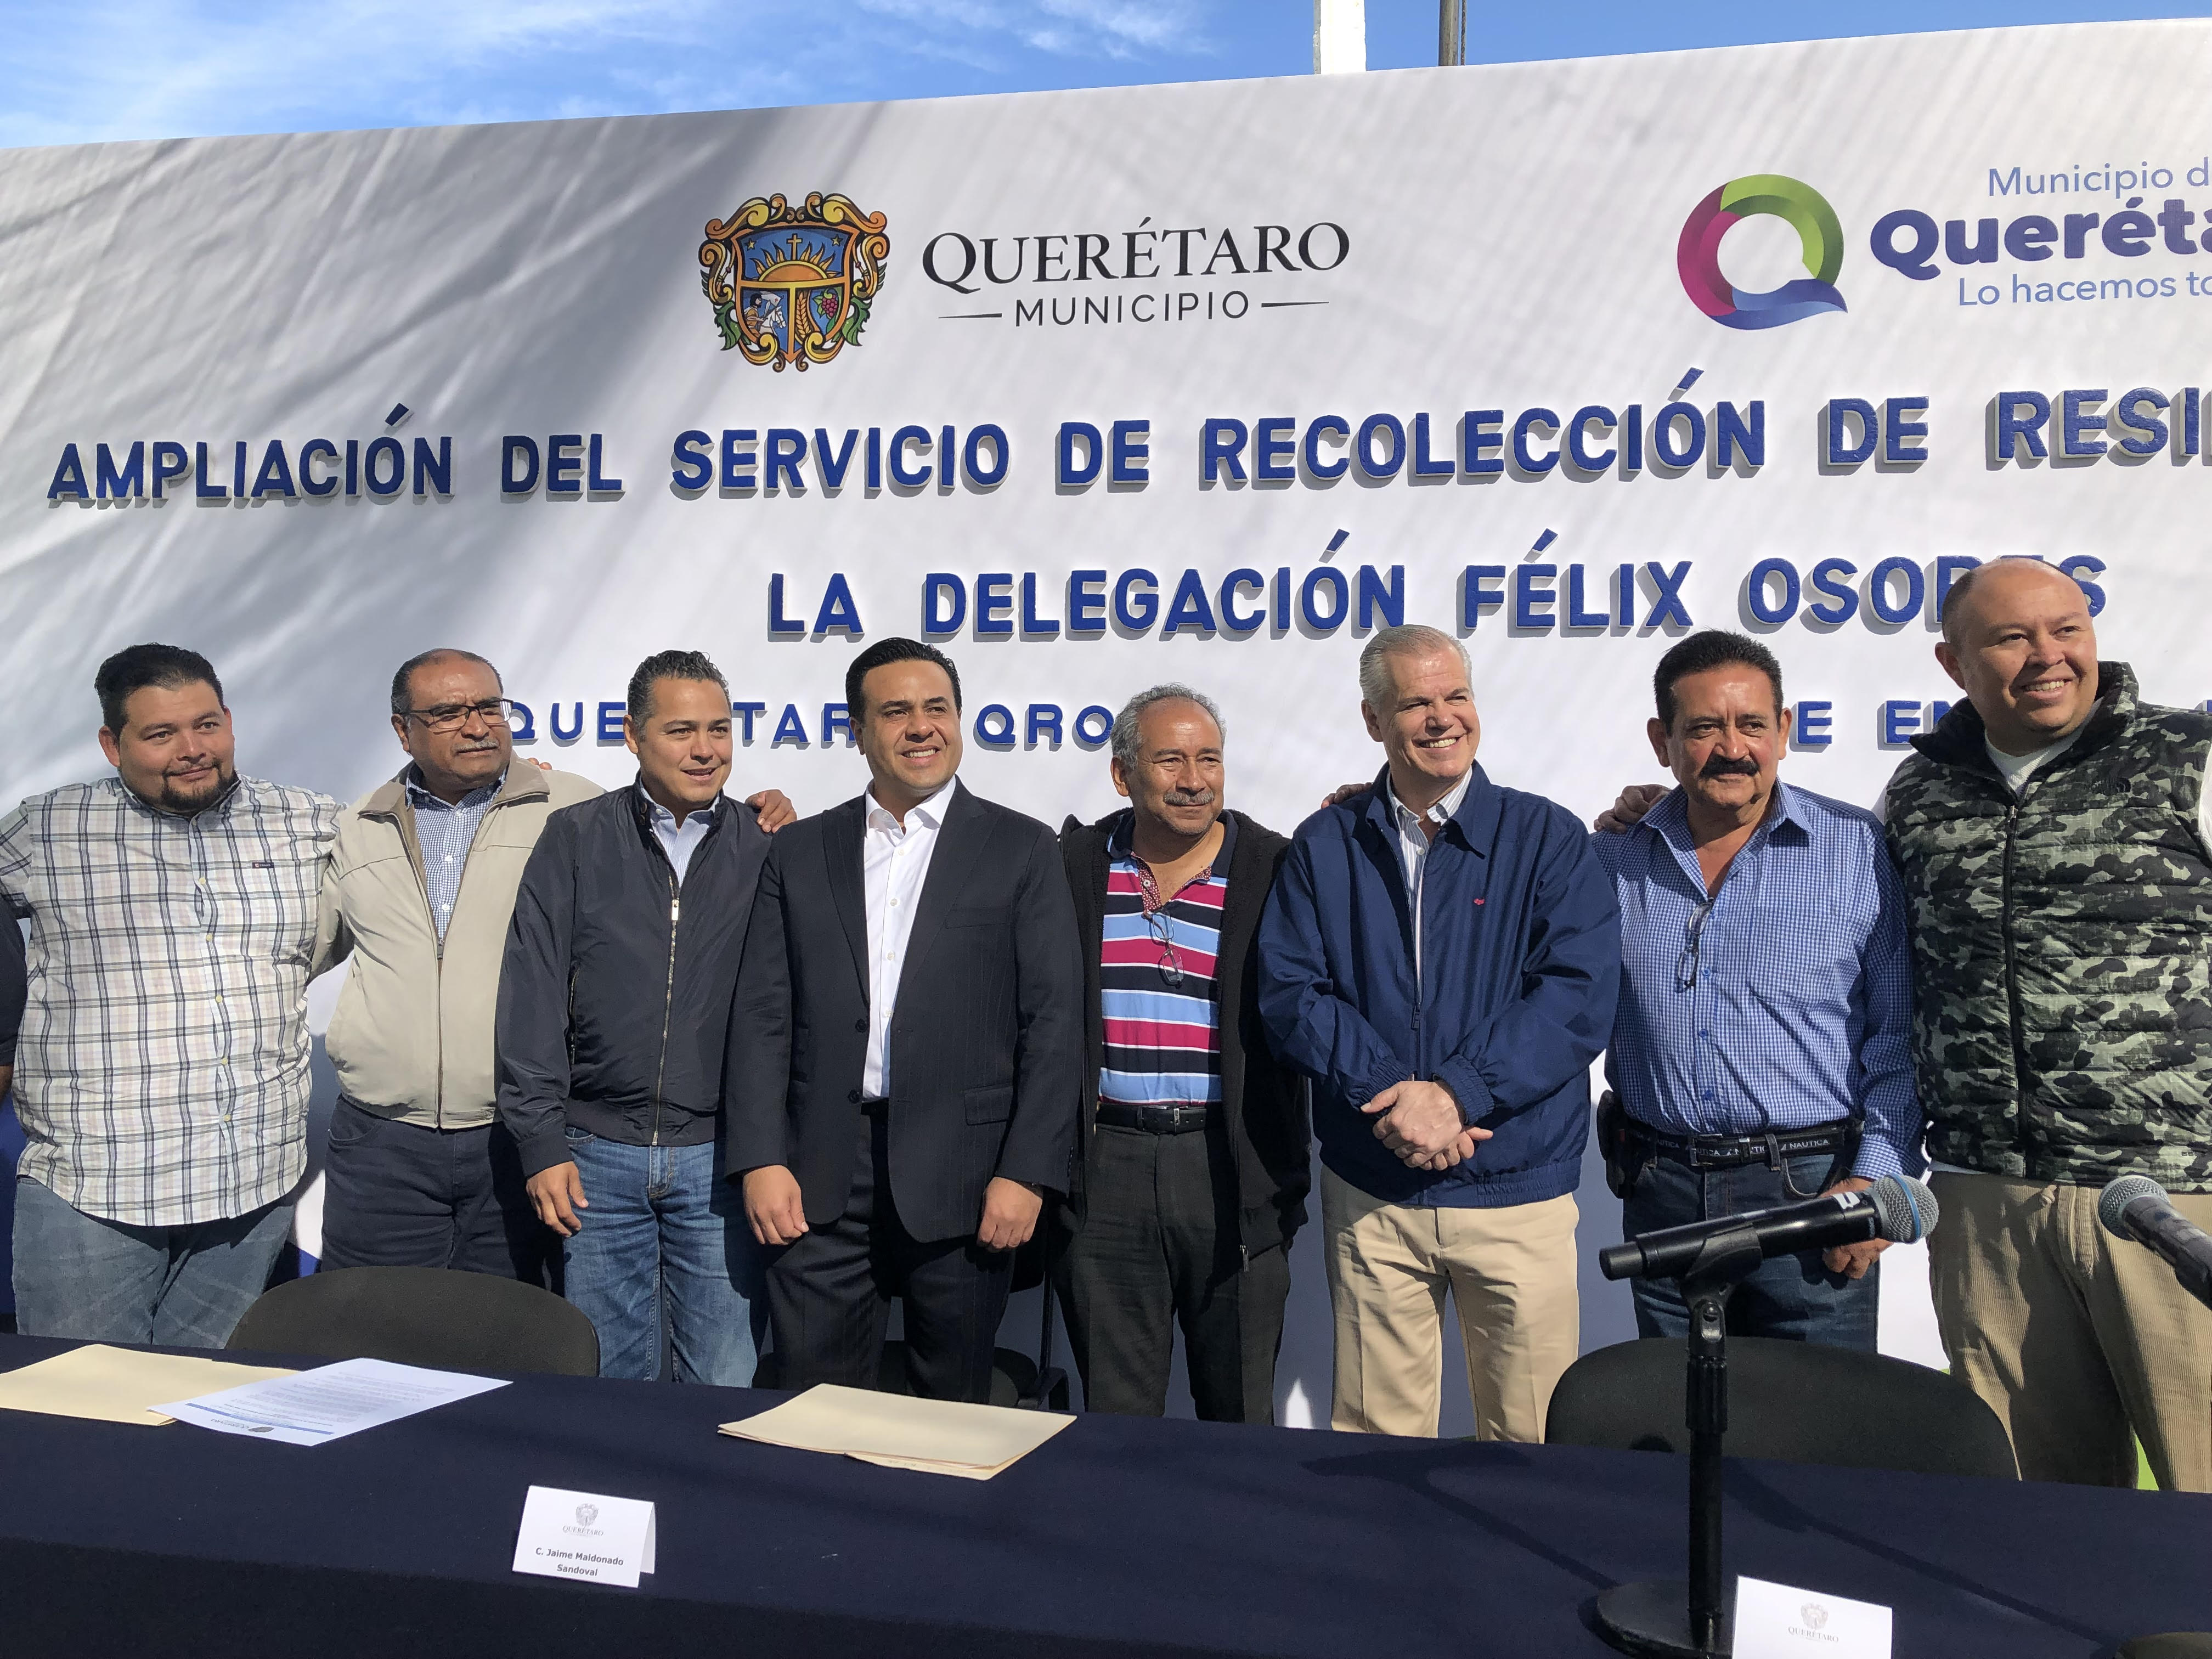  Recolección de basura en delegación Félix Osores Sotomayor será diaria: Luis Nava